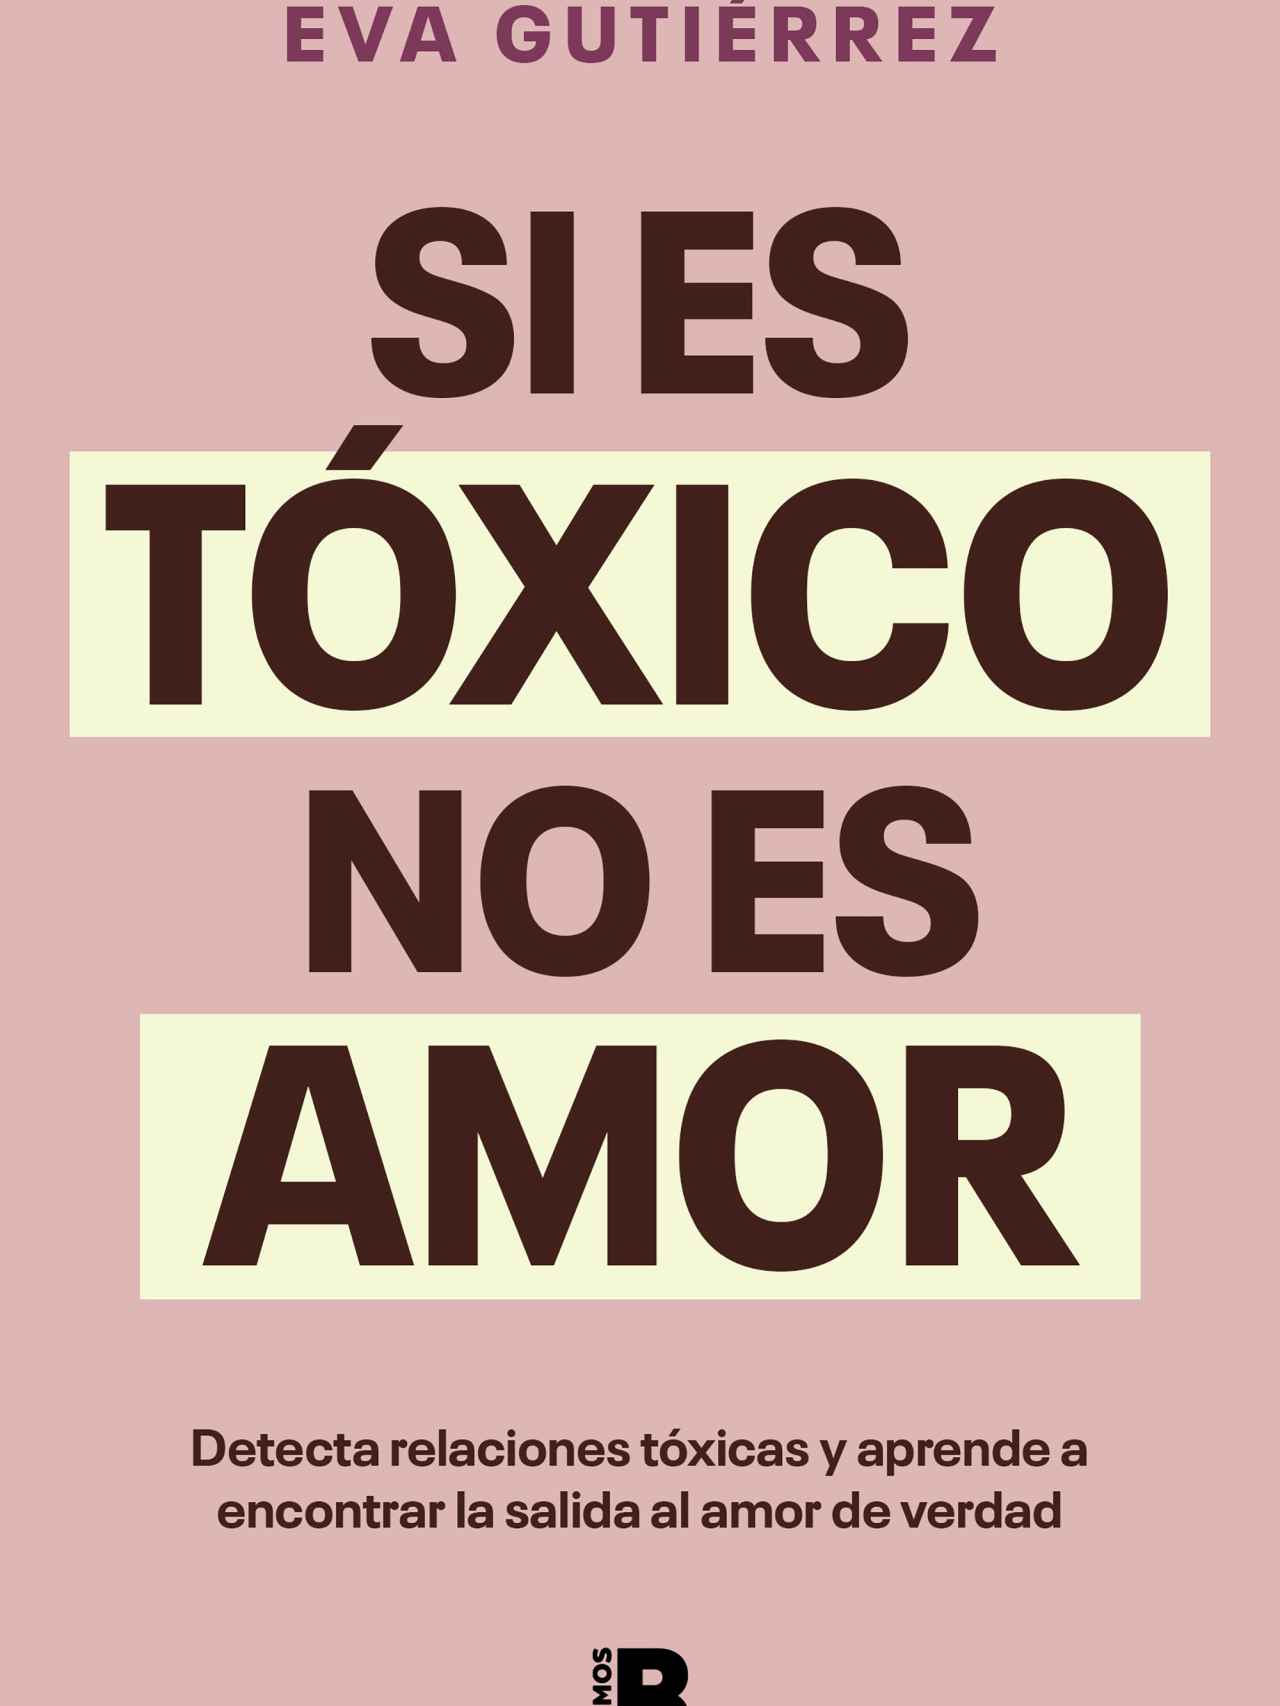 Portada del libro 'Si es tóxico no es amor'.